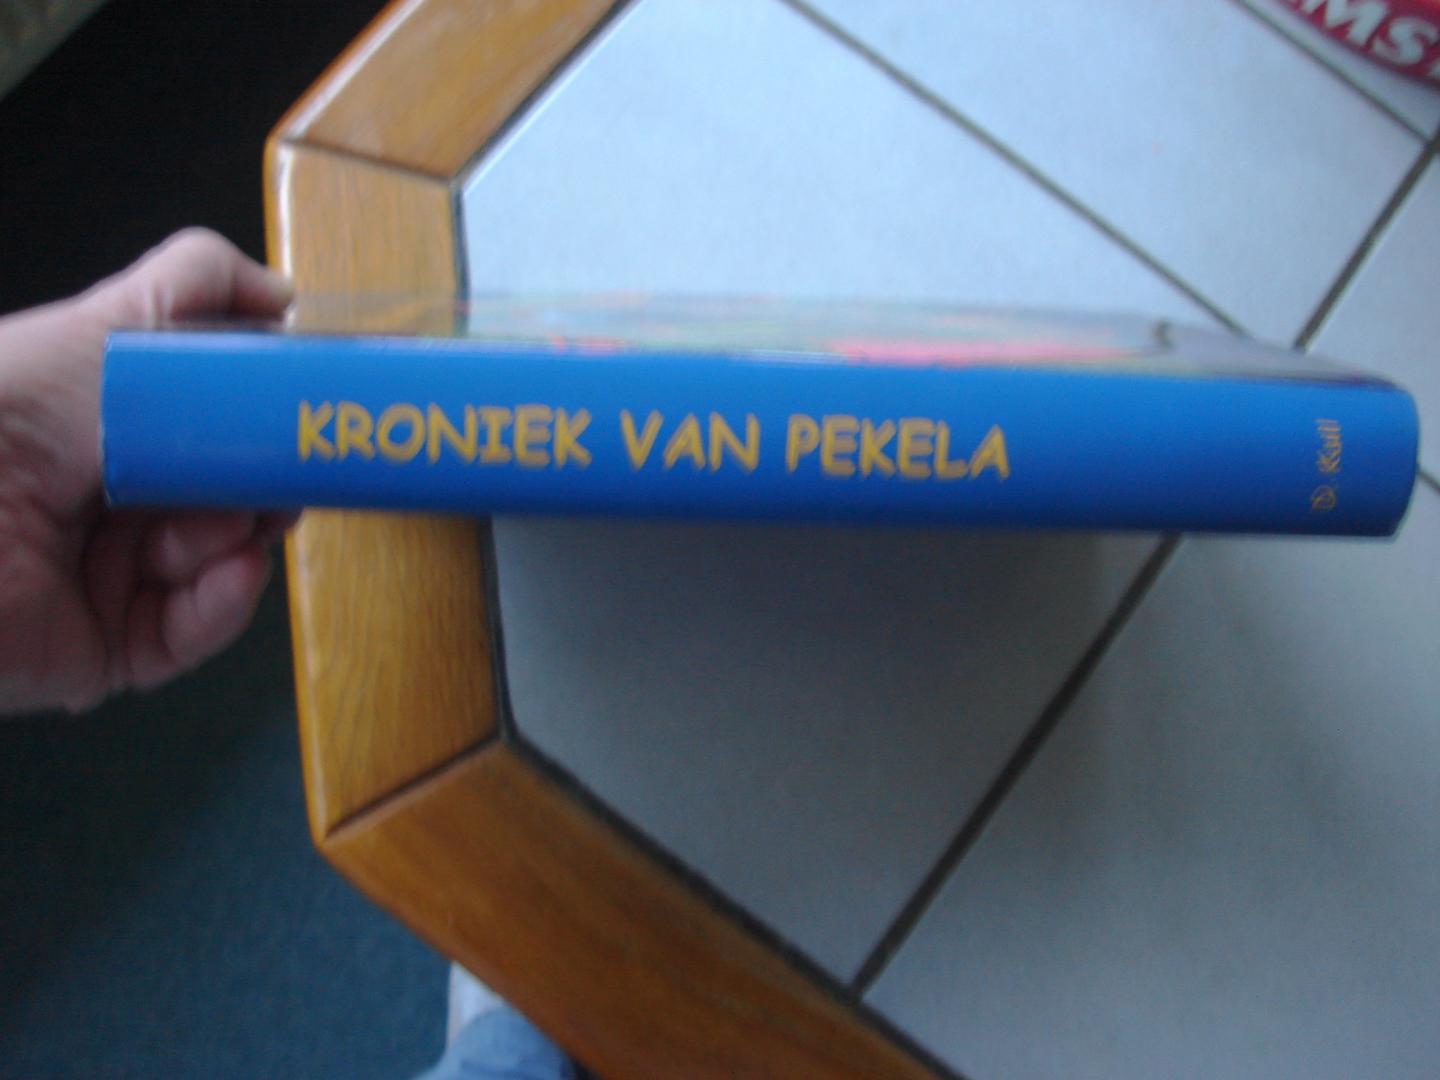 Dick Kuil. - Kroniek van Pekela. ( 1558 ) 1559 - 1999.